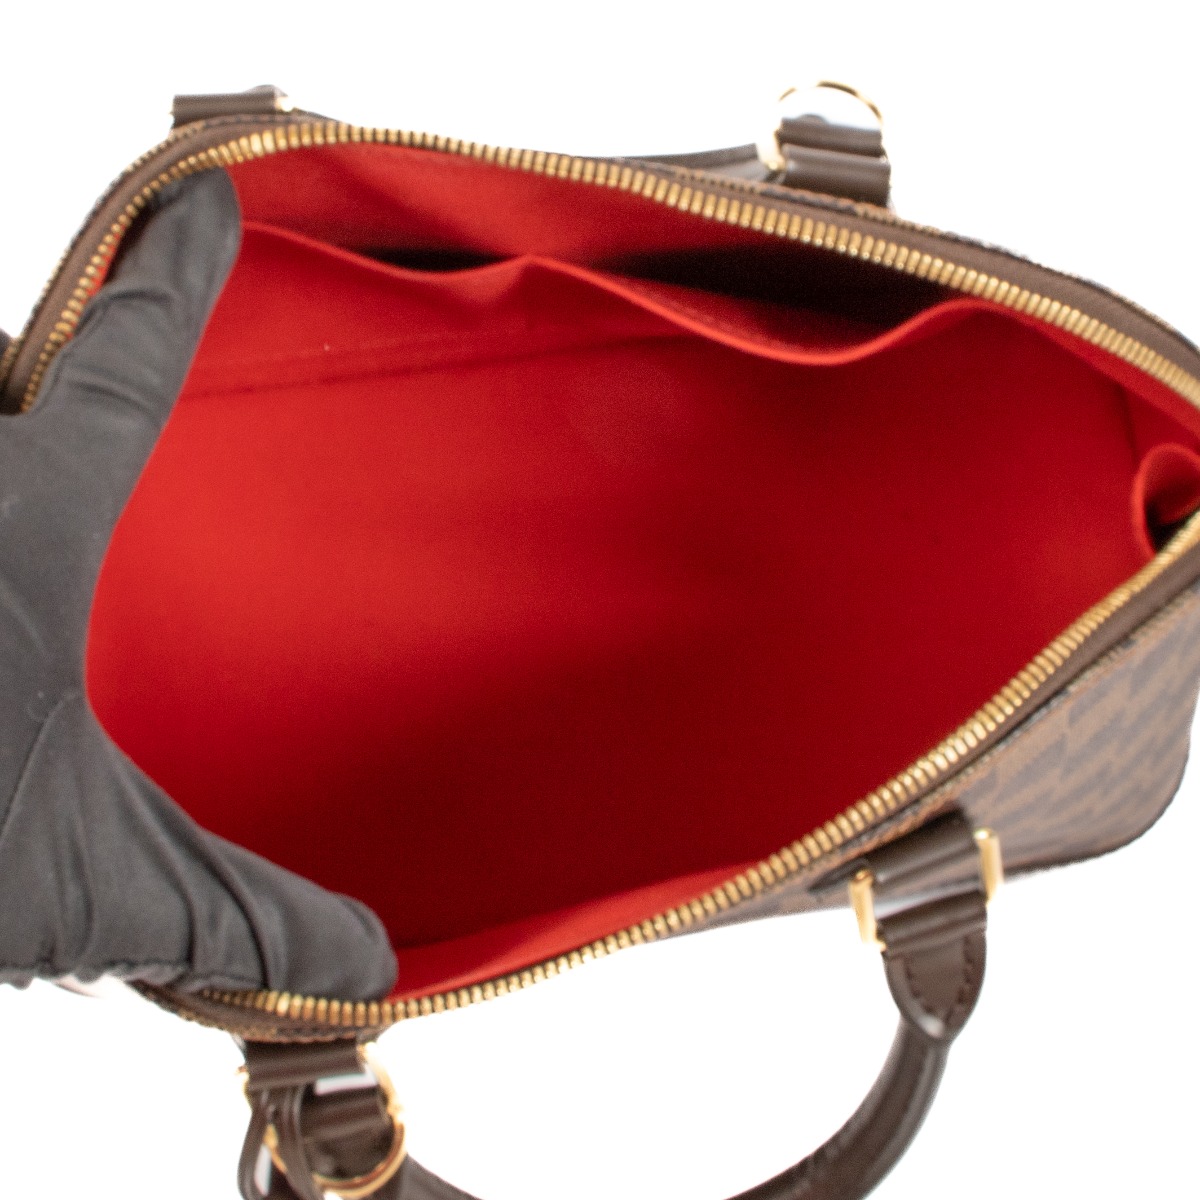 Louis Vuitton Alma PM Damier Ebene Top Handle Bag ○ Labellov